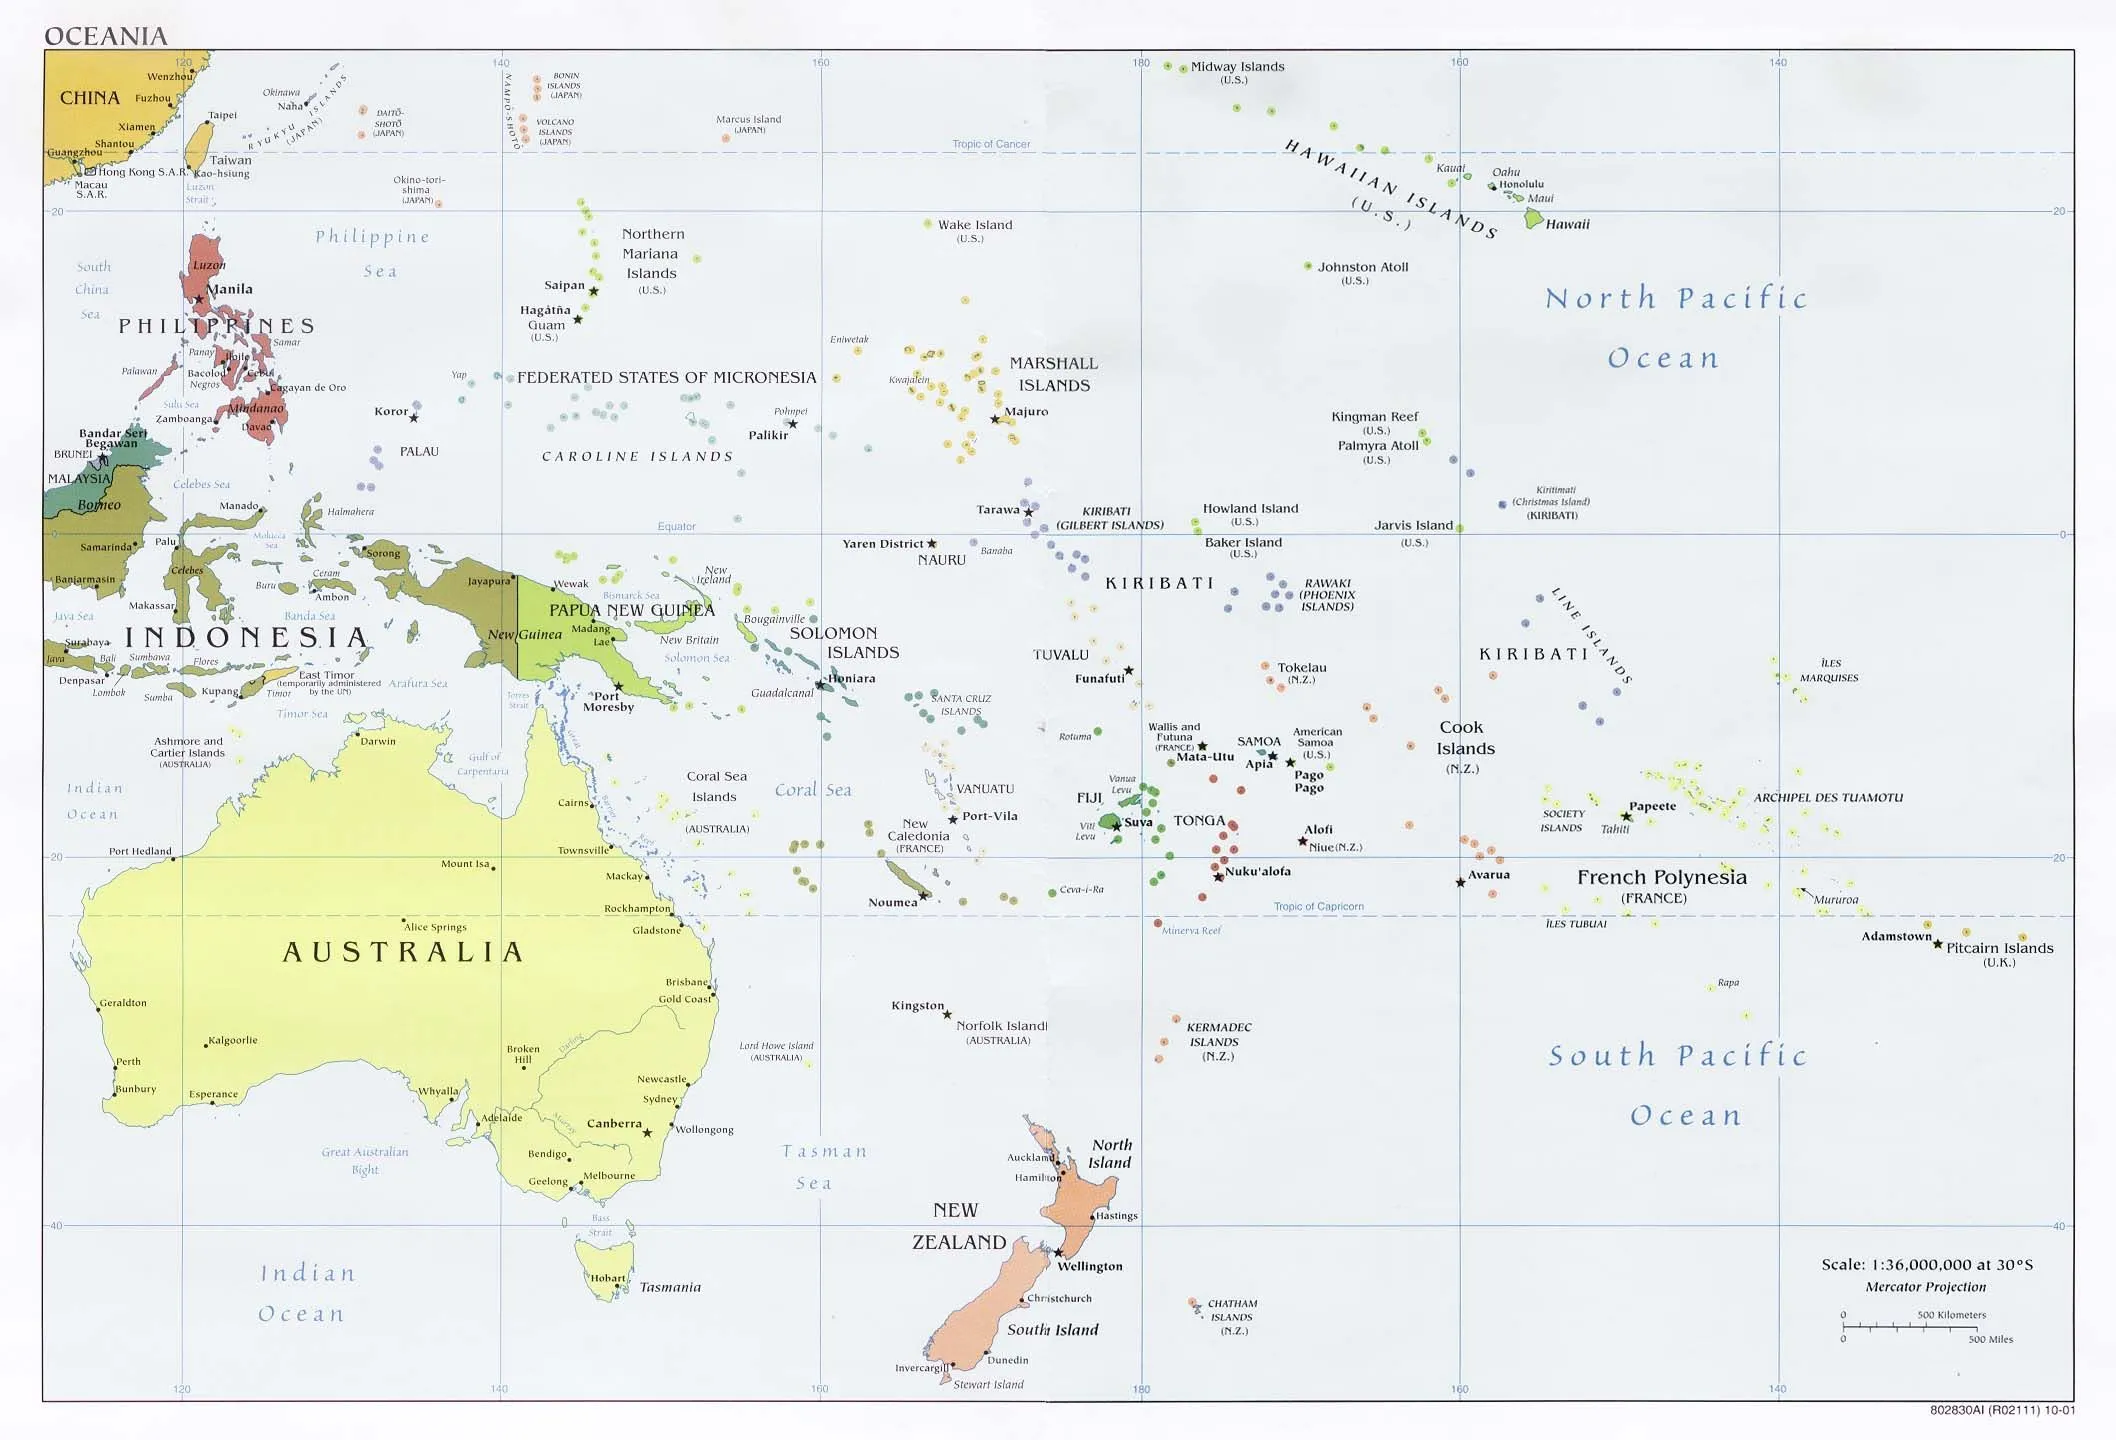 Mapa Politico de Oceanía 2001 - Tamaño completo